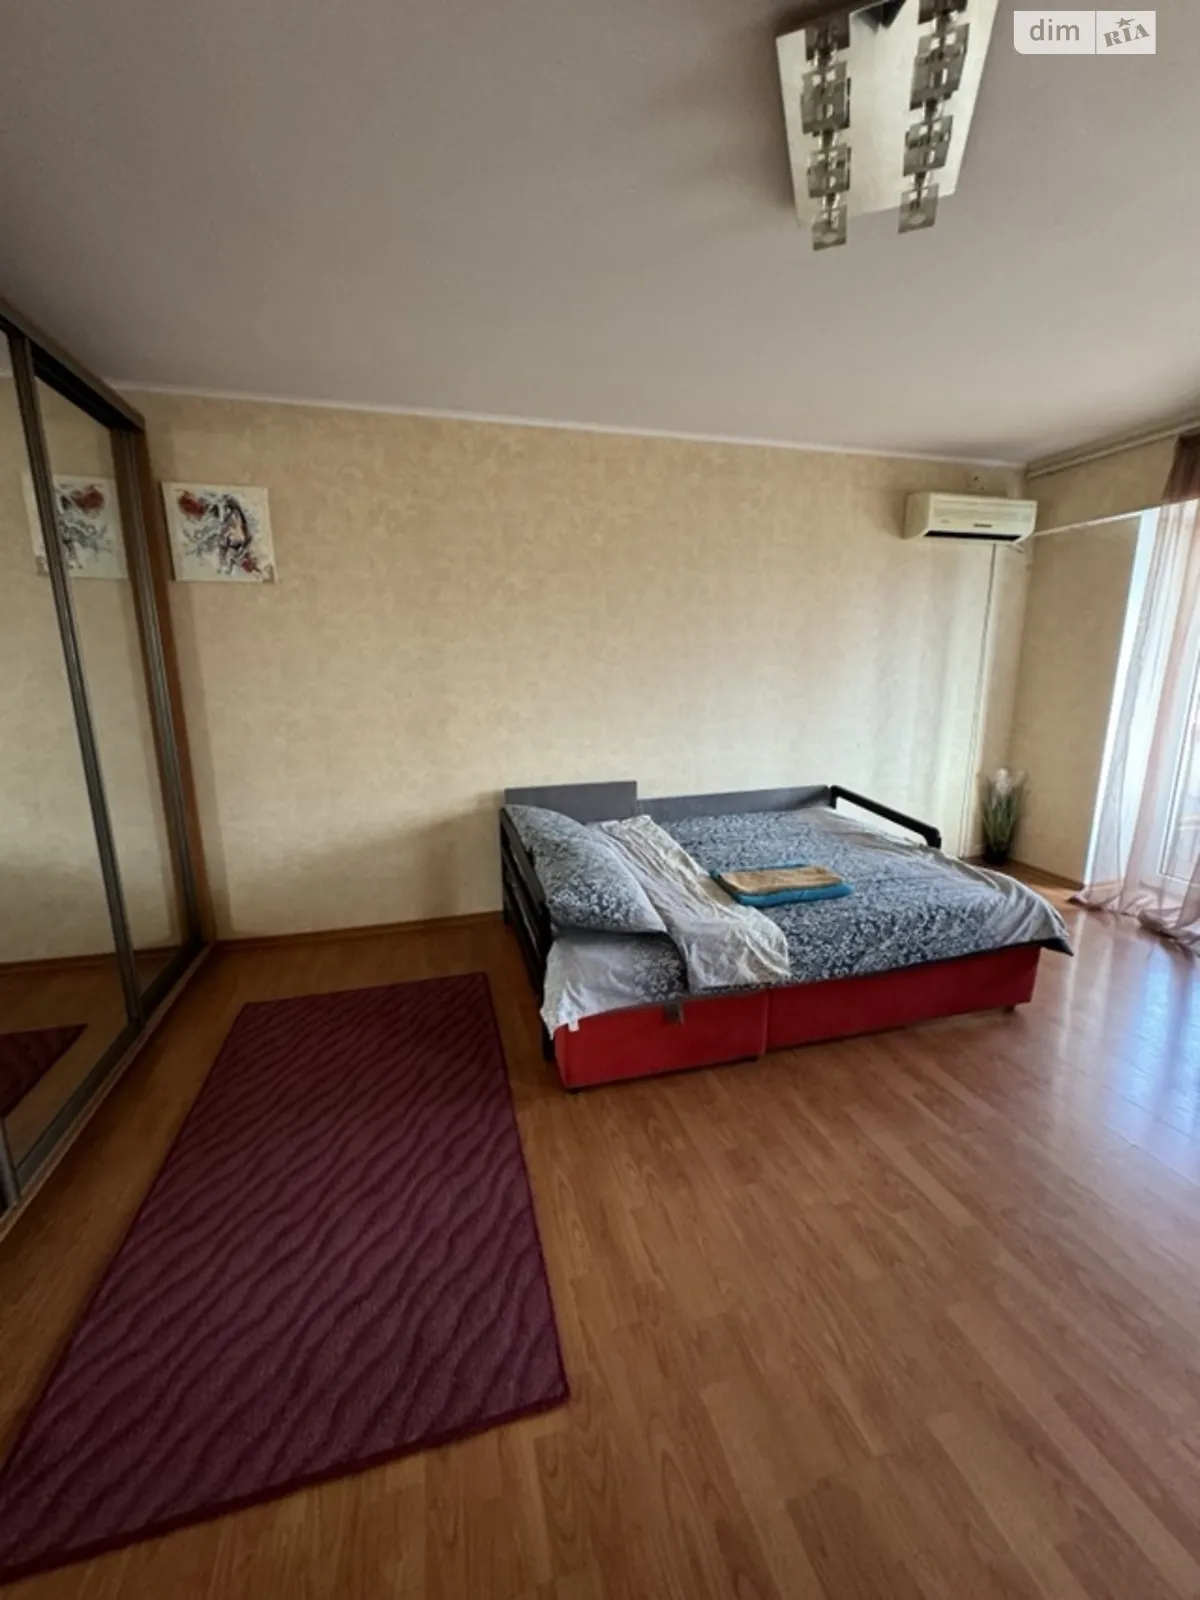 1-кімнатна квартира у Запоріжжі, цена: 800 грн - фото 1